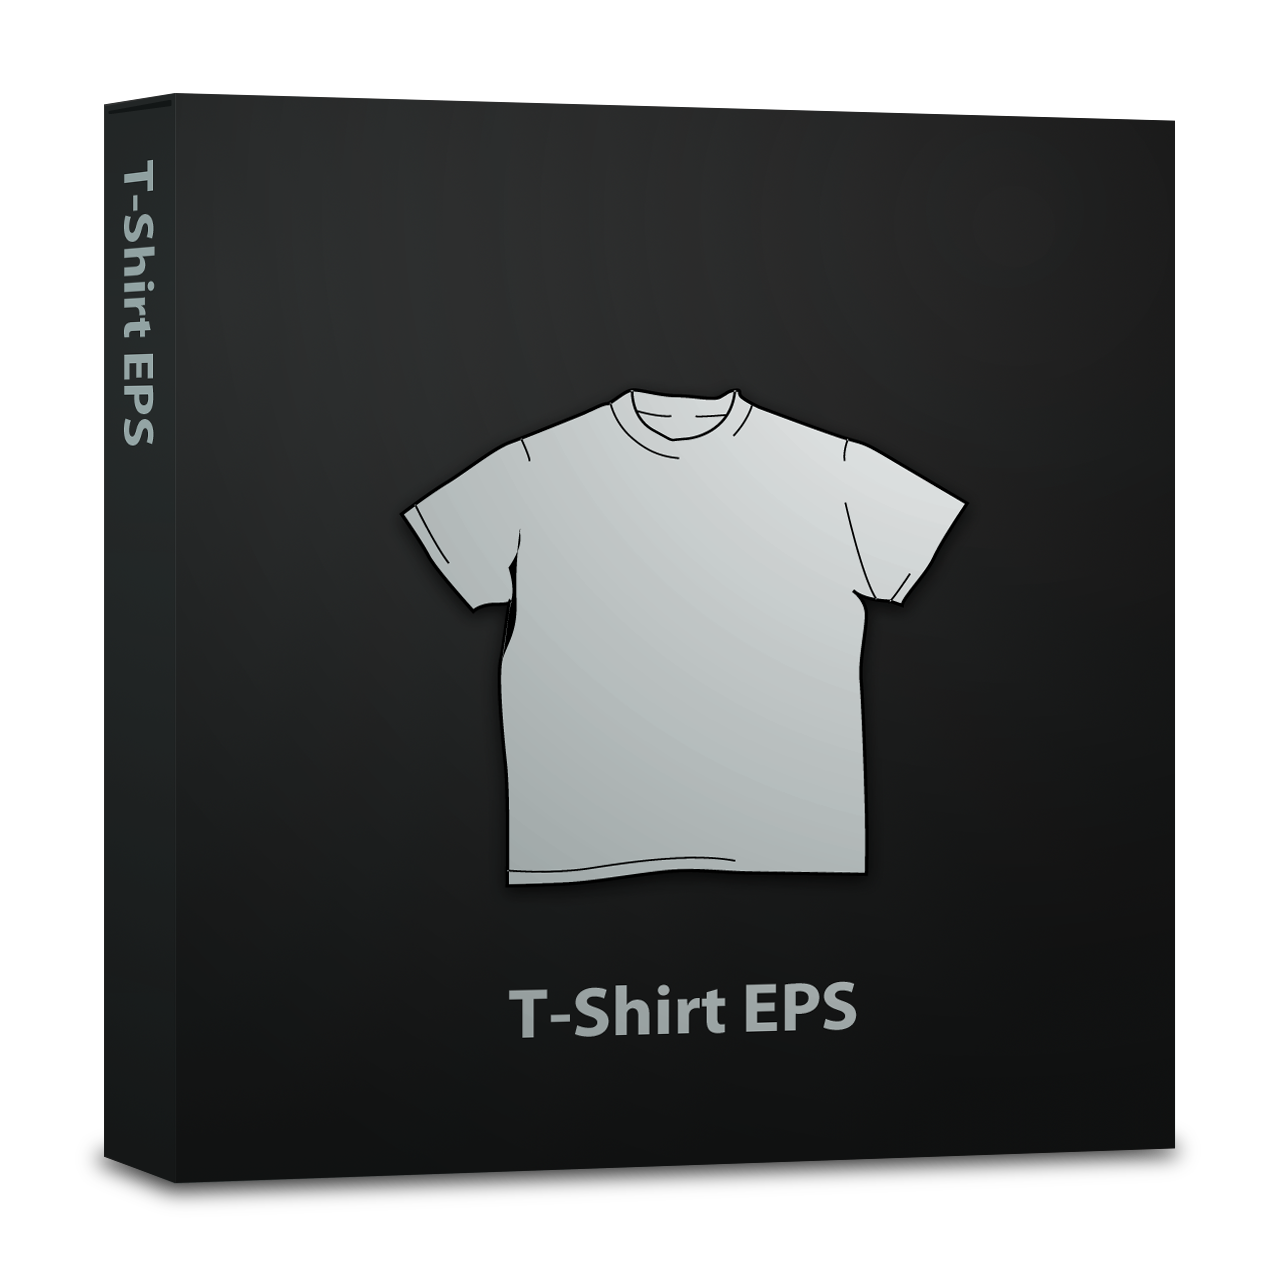 Tシャツデザイン用eps 札幌web制作のシンクグラフィカ